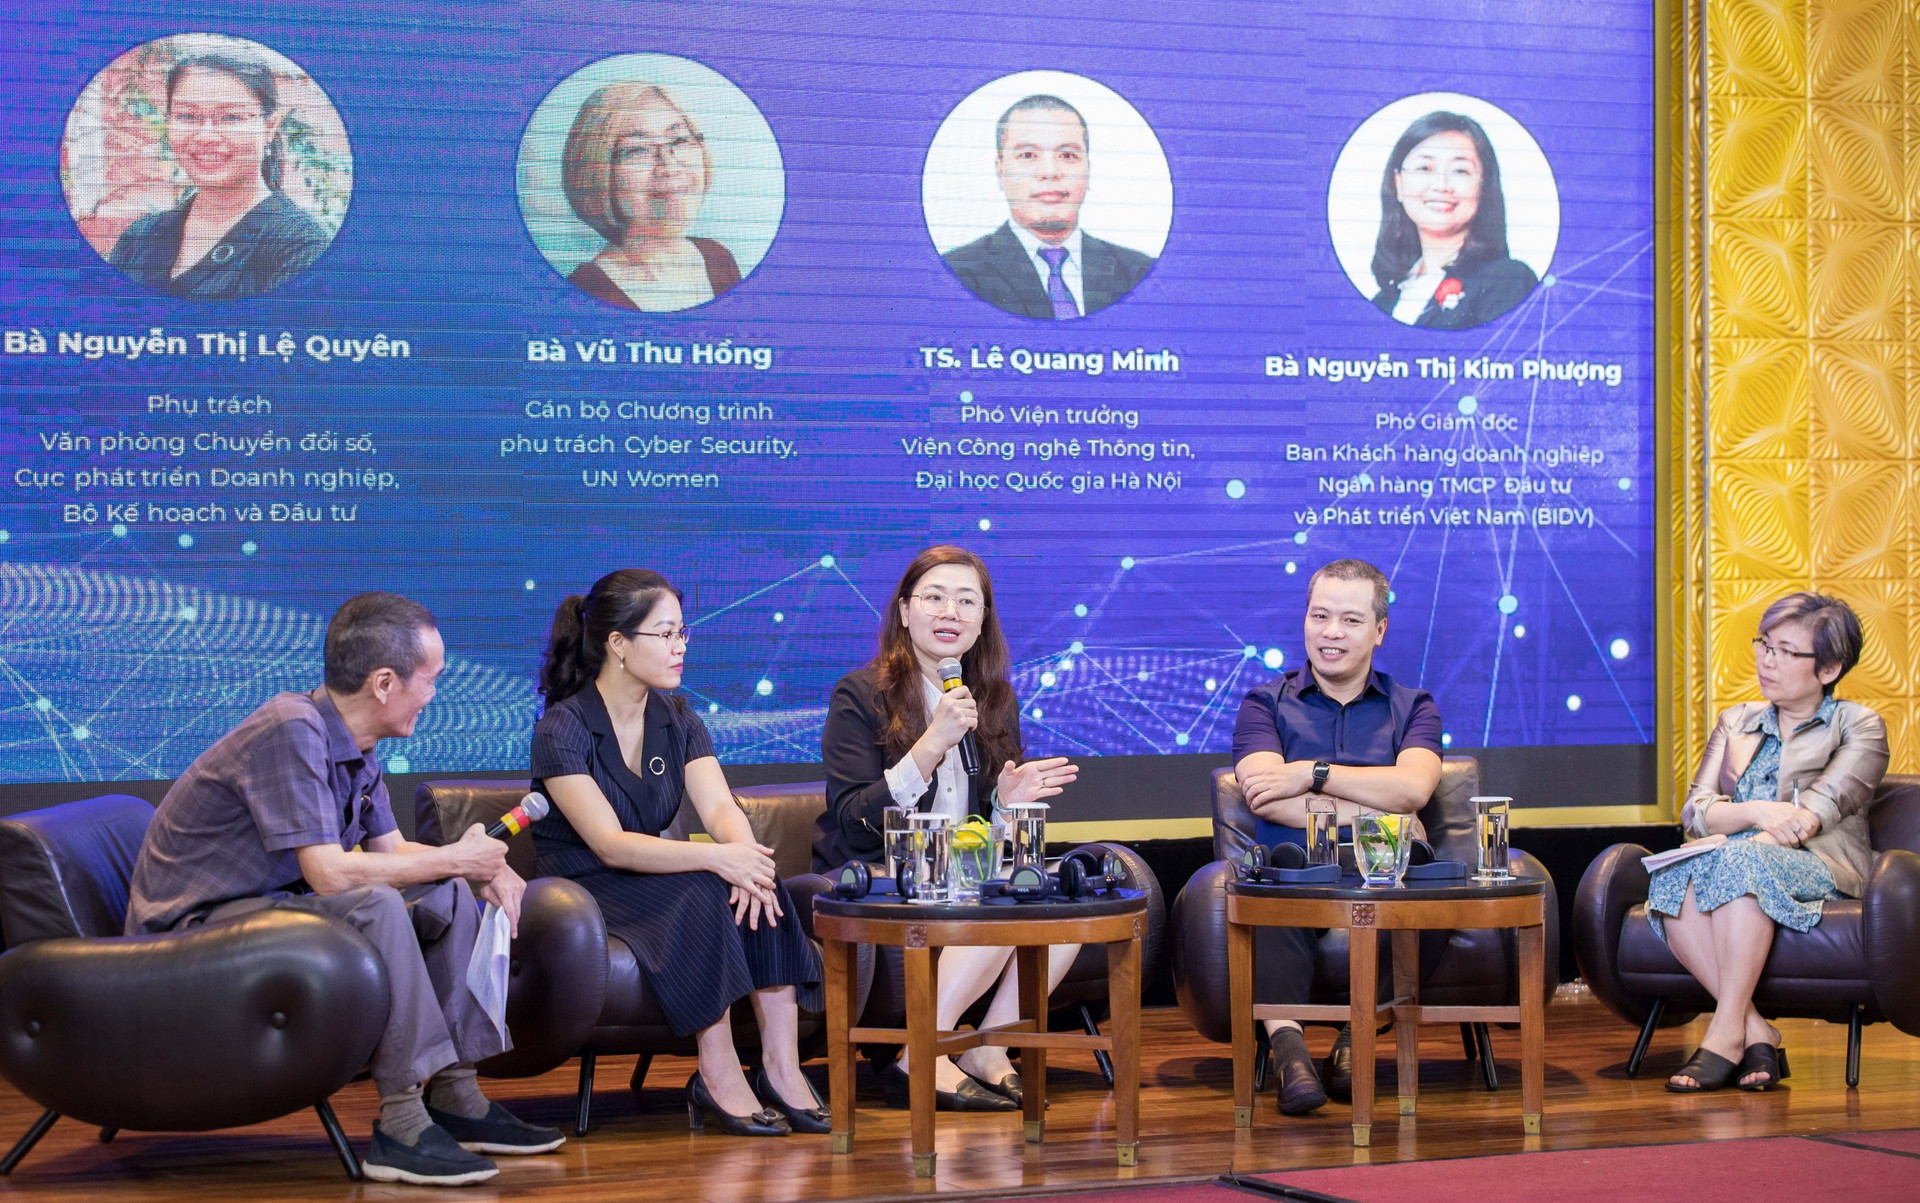 Bà Nguyễn Thị Kim Phượng - Phó Giám đốc Ban Khách hàng doanh nghiệp BIDV, cùng các diễn giả tham gia Chương trình.